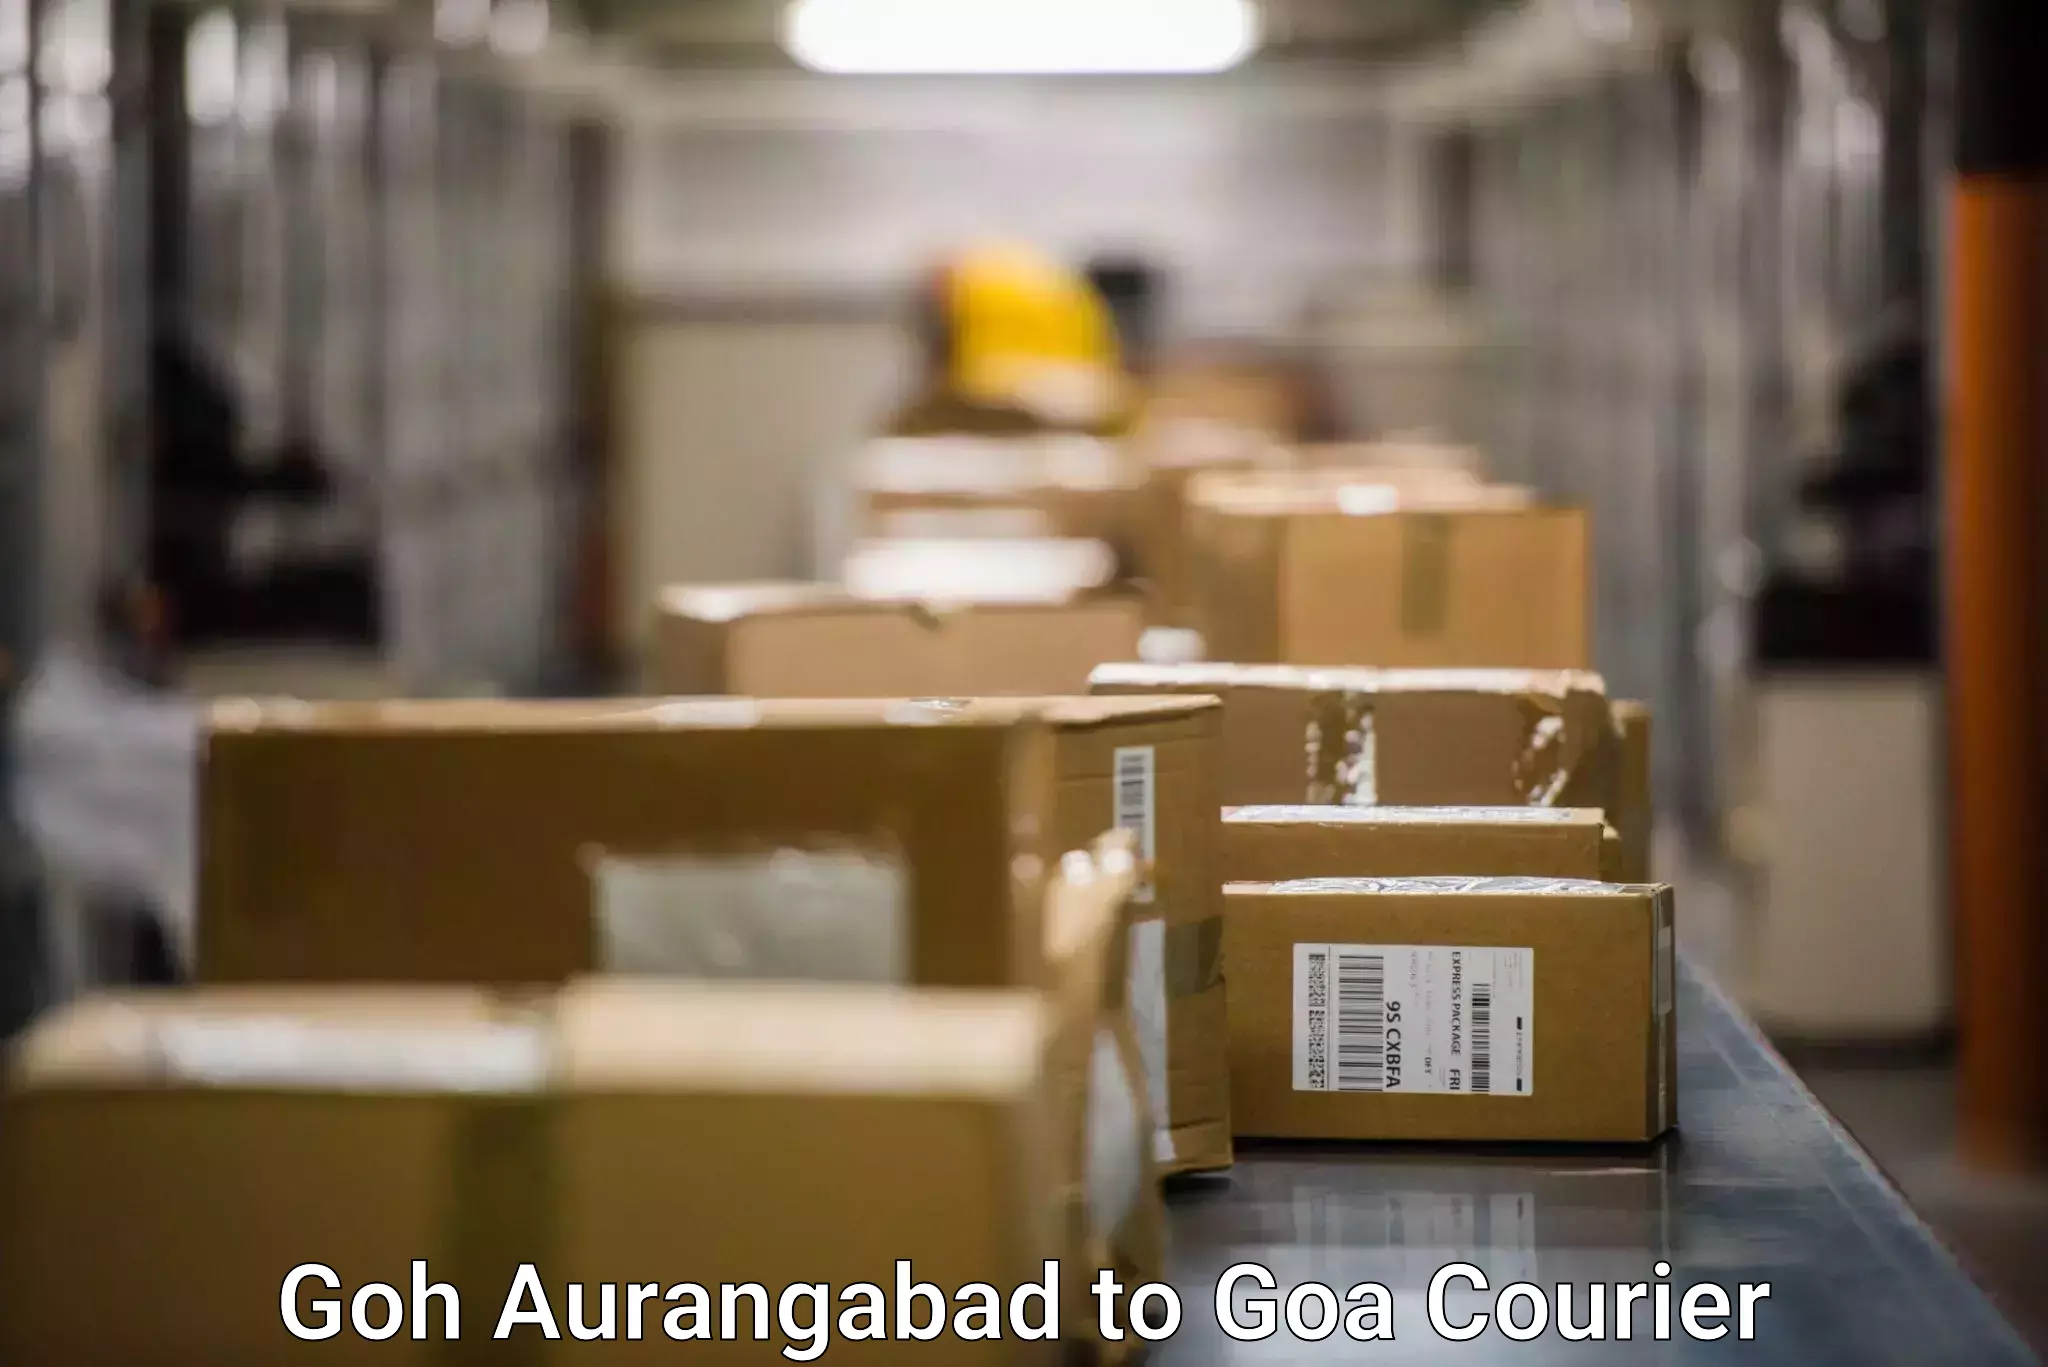 Global freight services Goh Aurangabad to Bardez